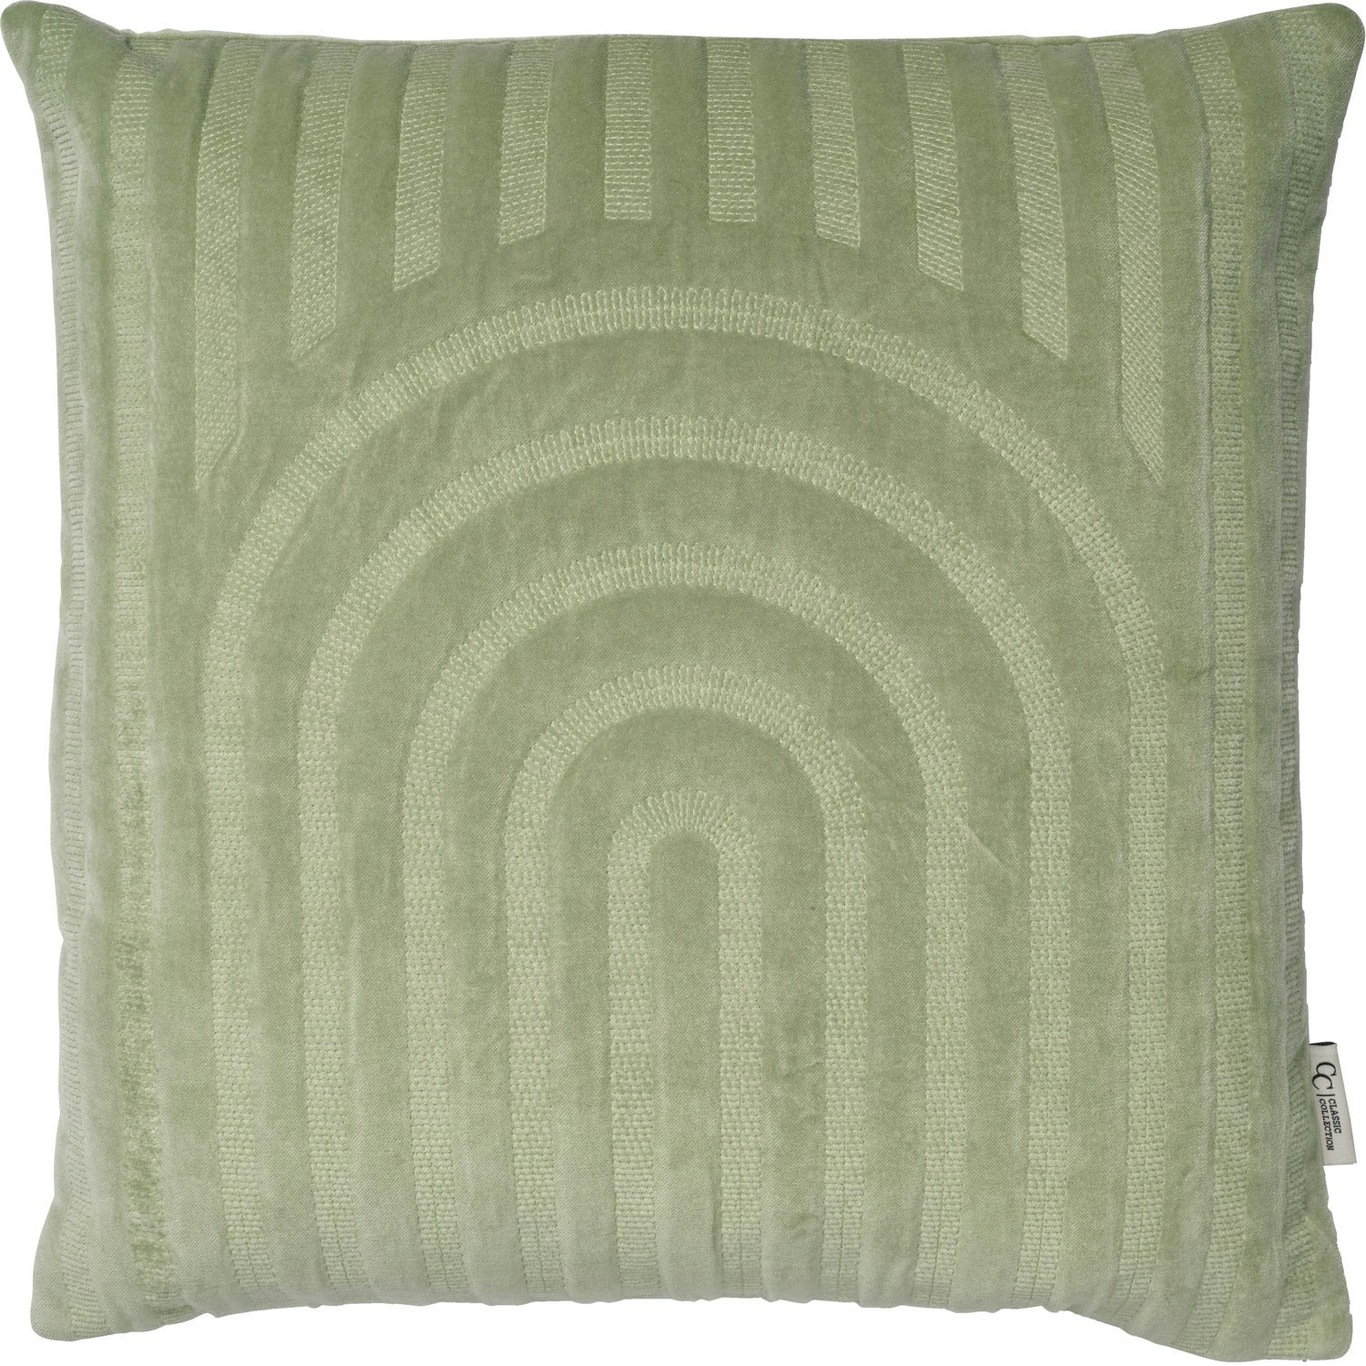 Arch Cushion Cover 50x50 cm, Tea